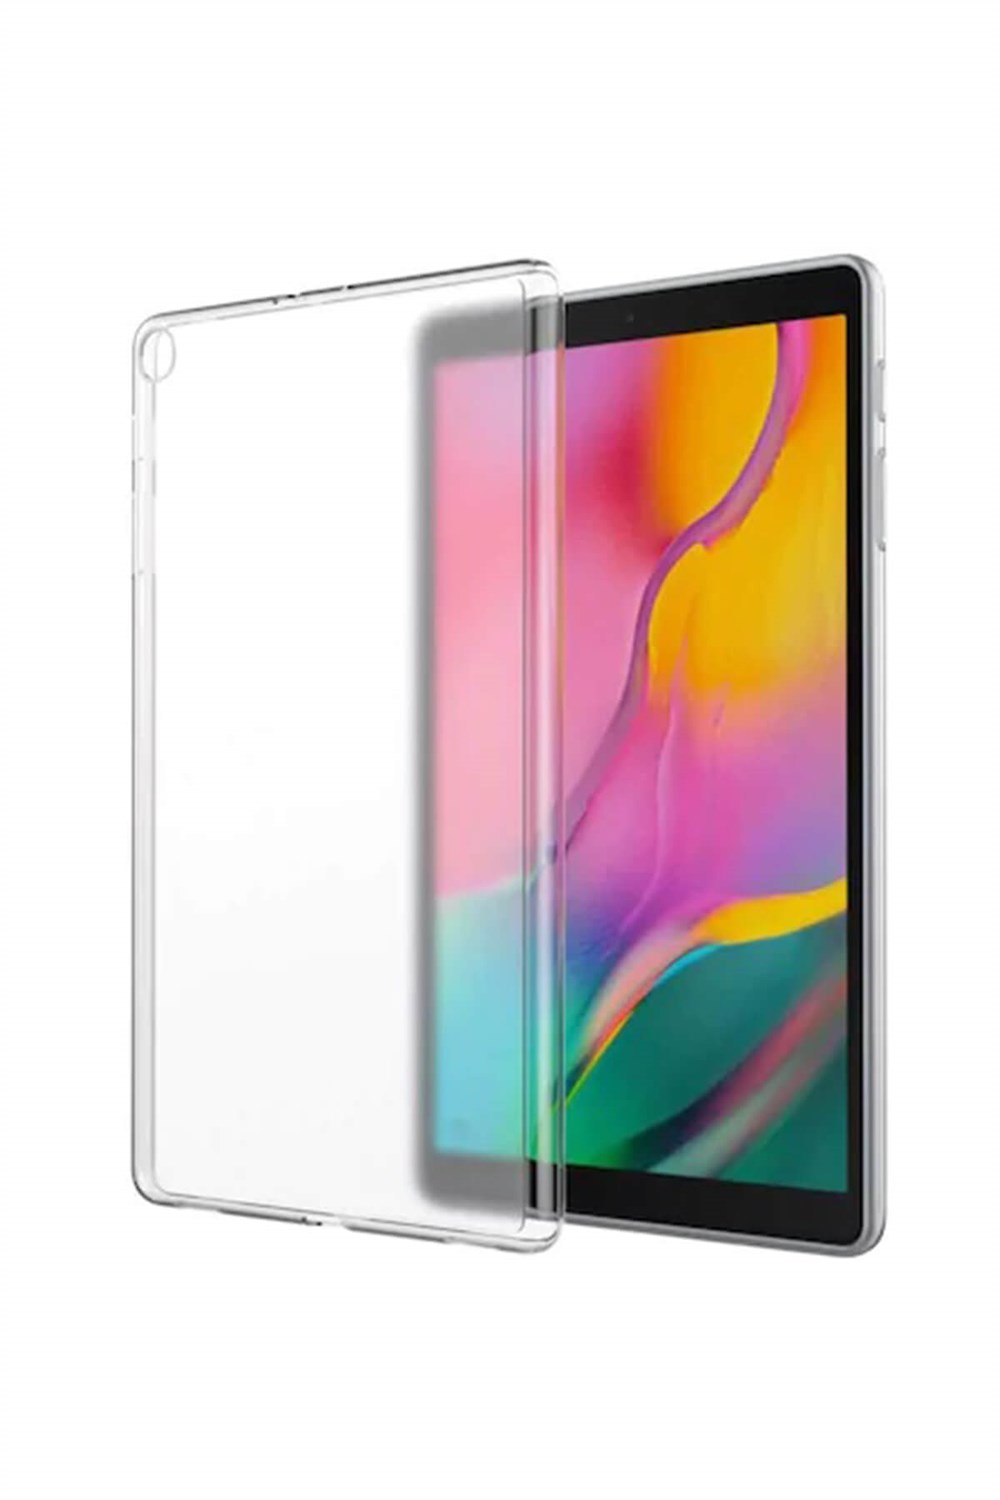 Samsung Galaxy Tab A SM-T510 Silikon Tablet Kılıfı (10.1 inç) I Esepetim.com